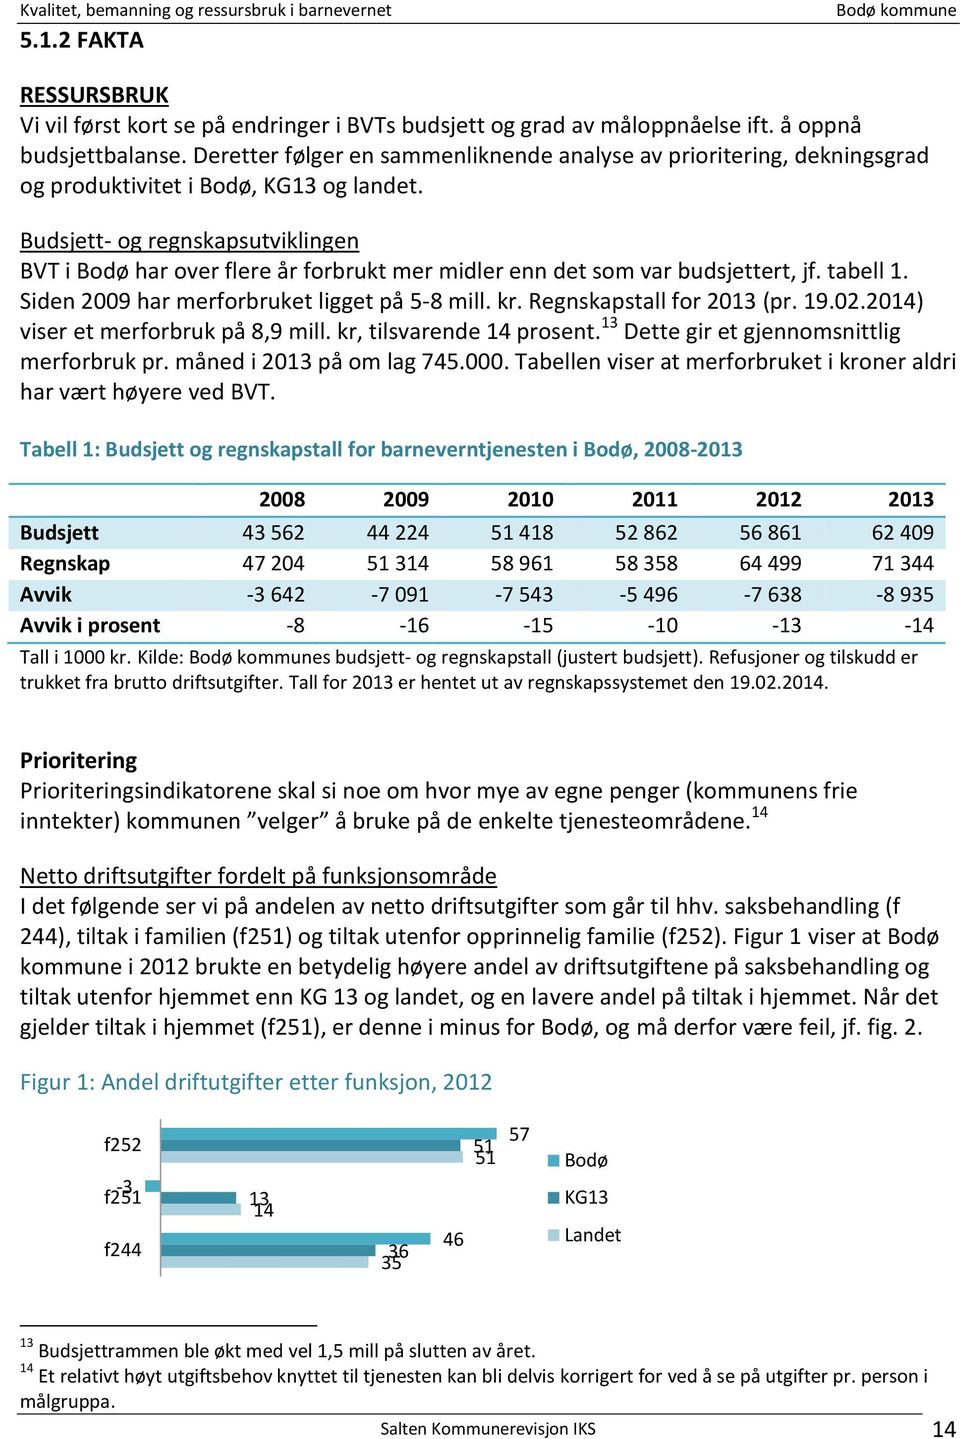 Budsjett- og regnskapsutviklingen BVT i Bodø har over flere år forbrukt mer midler enn det som var budsjettert, jf. tabell 1. Siden 2009 har merforbruket ligget på 5-8 mill. kr.